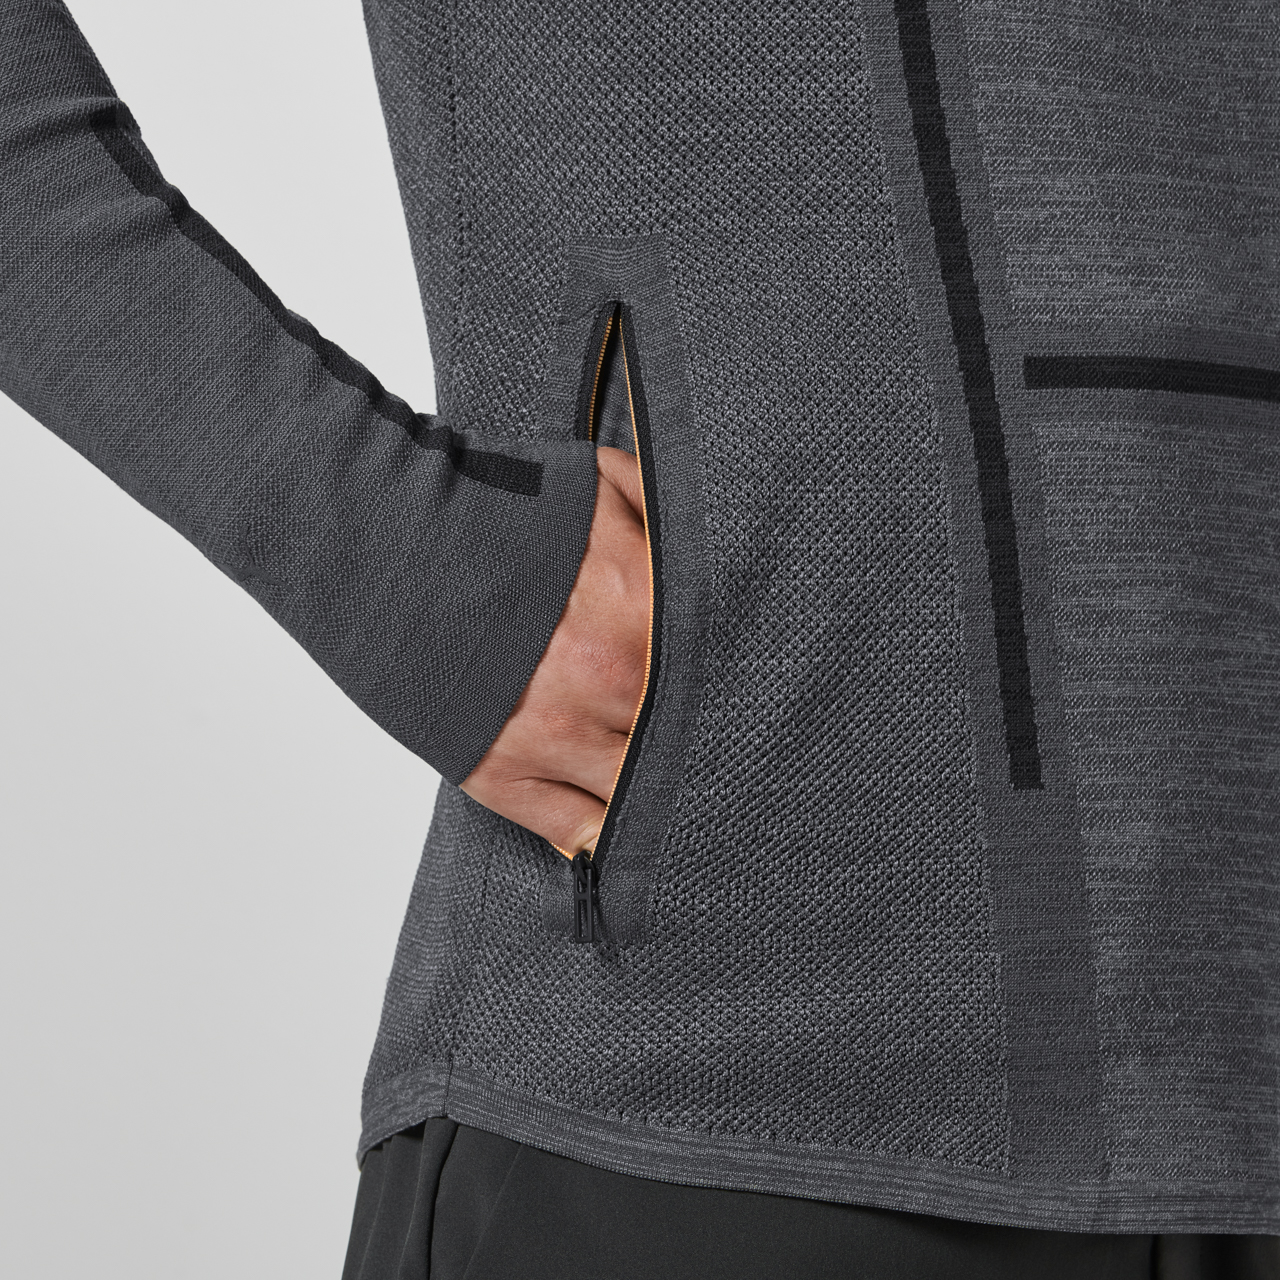 LULULEMON Define Jacket Luon Variegated Knit Heathered Black Gray